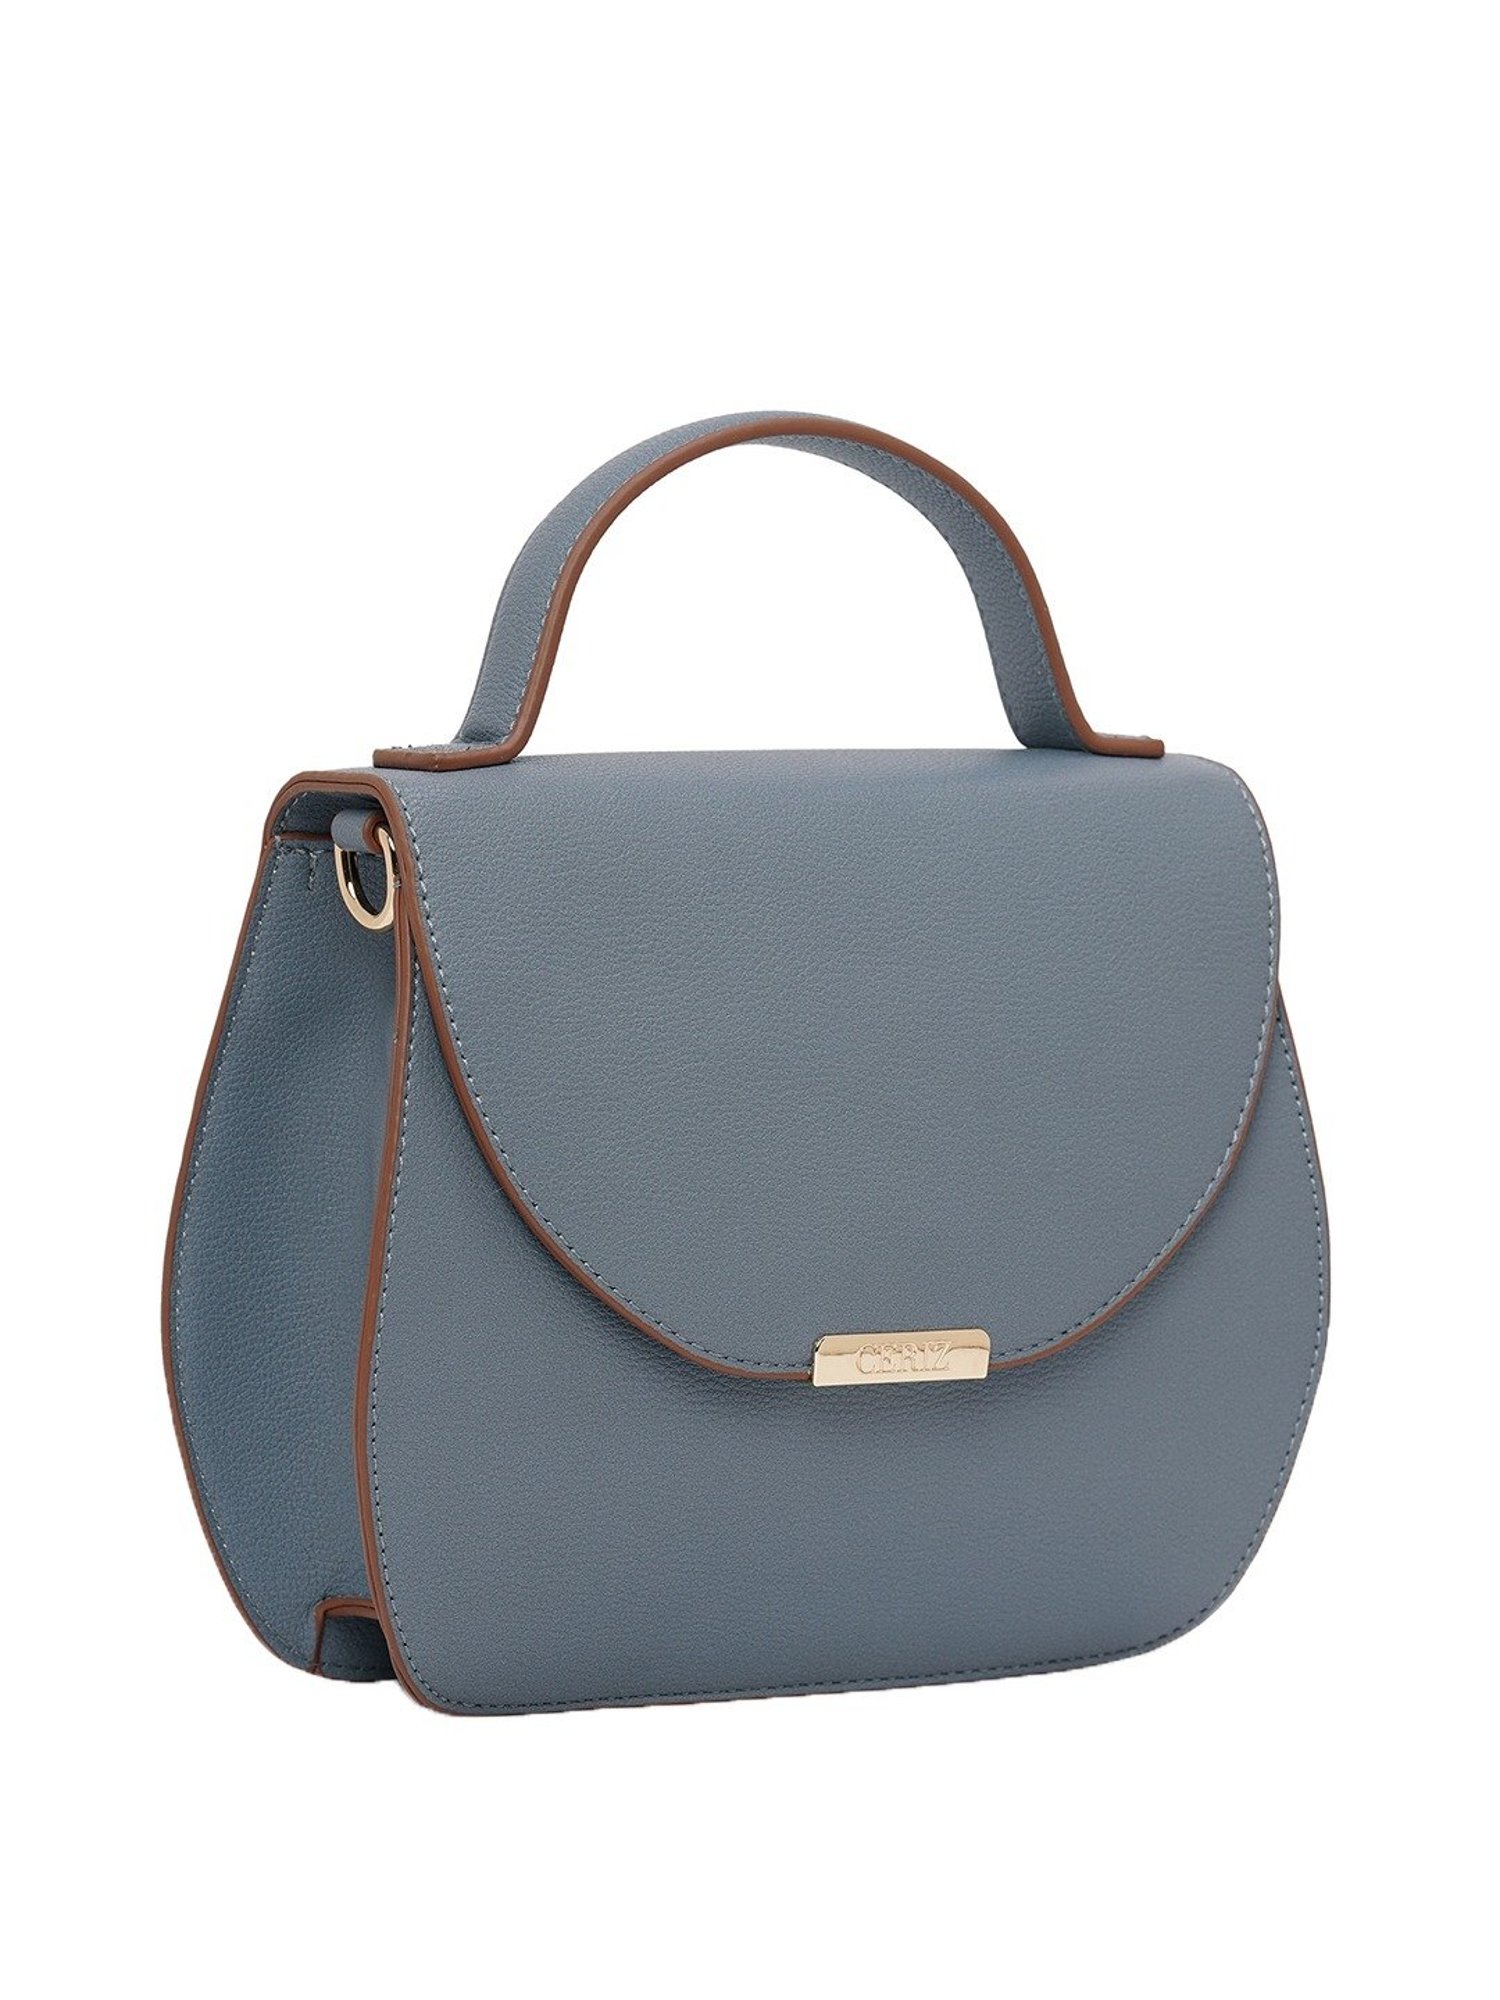 Buy Ceriz Roselin Olive Handbag Online at Best Prices in India - JioMart.